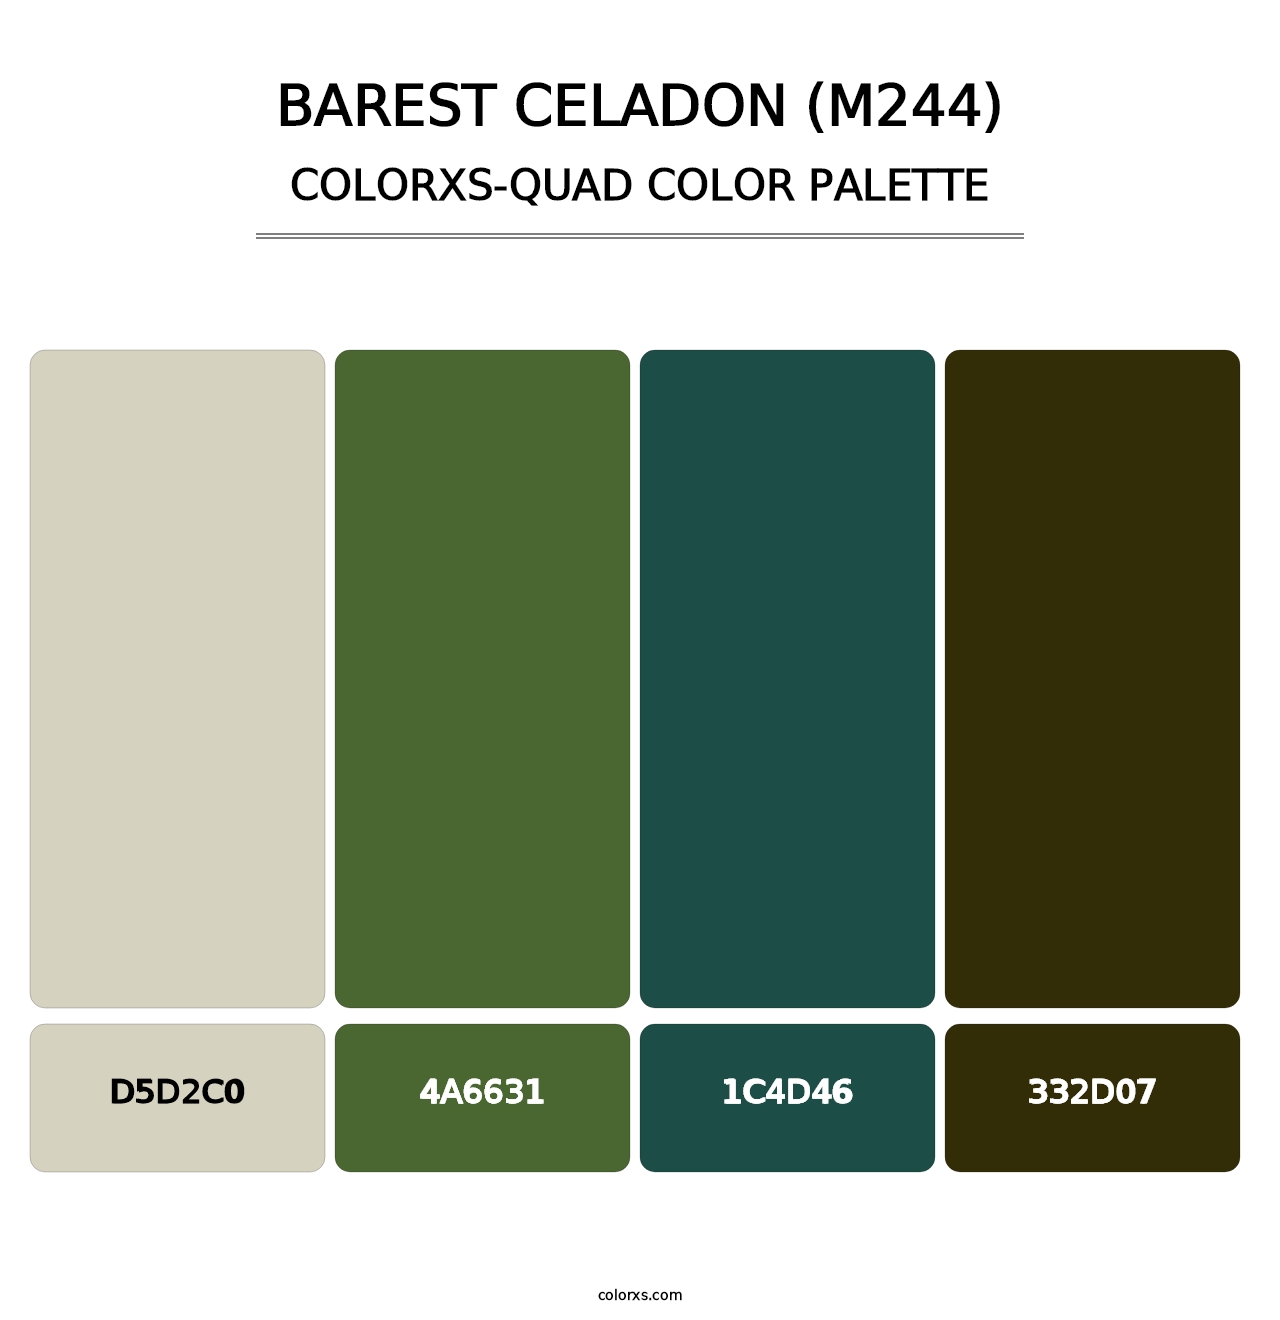 Barest Celadon (M244) - Colorxs Quad Palette